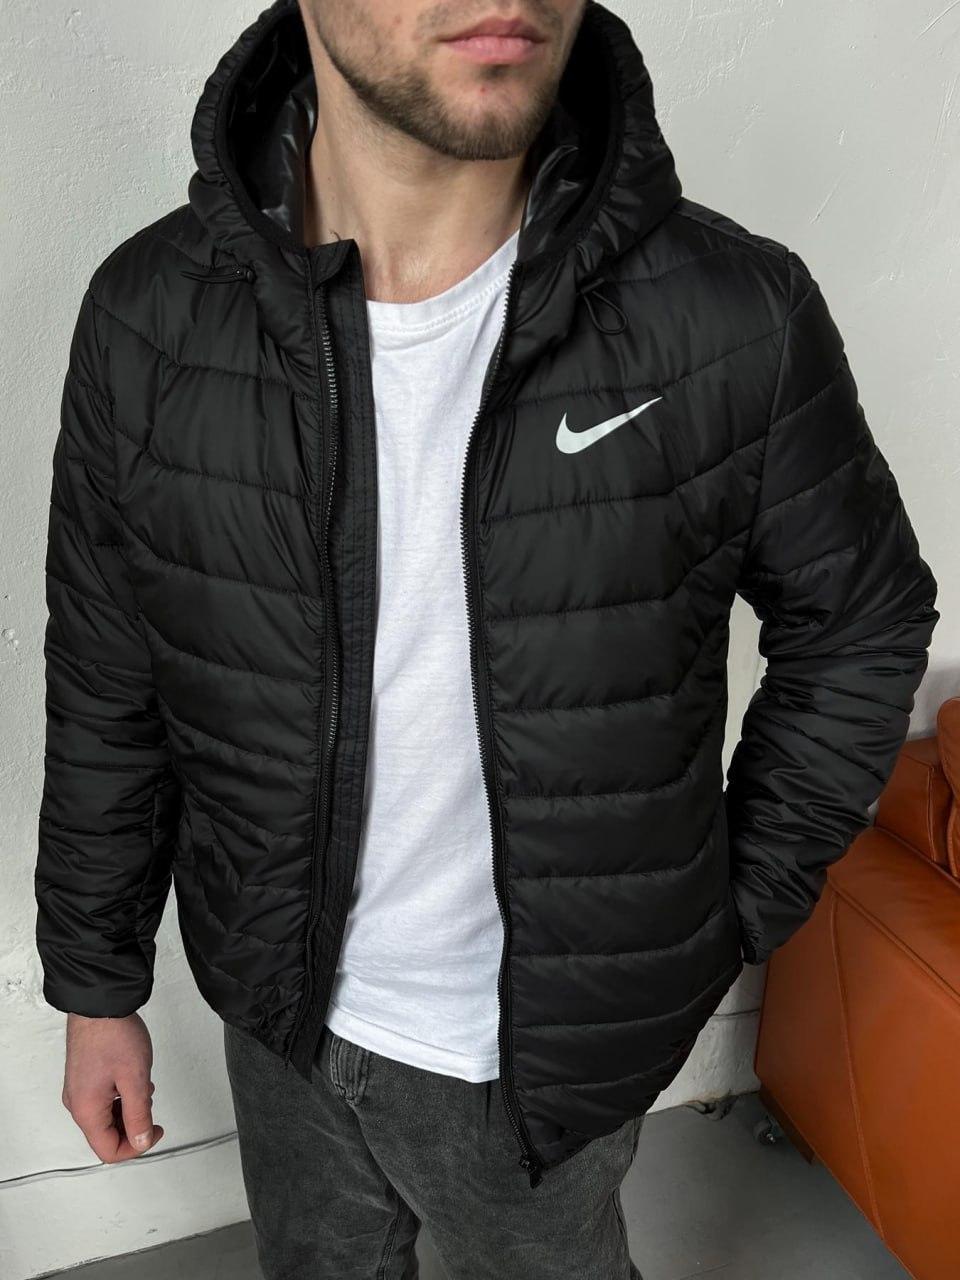 Чоловича коротка куртка Nike чорна, Молодіжна спортивна куртка Найк